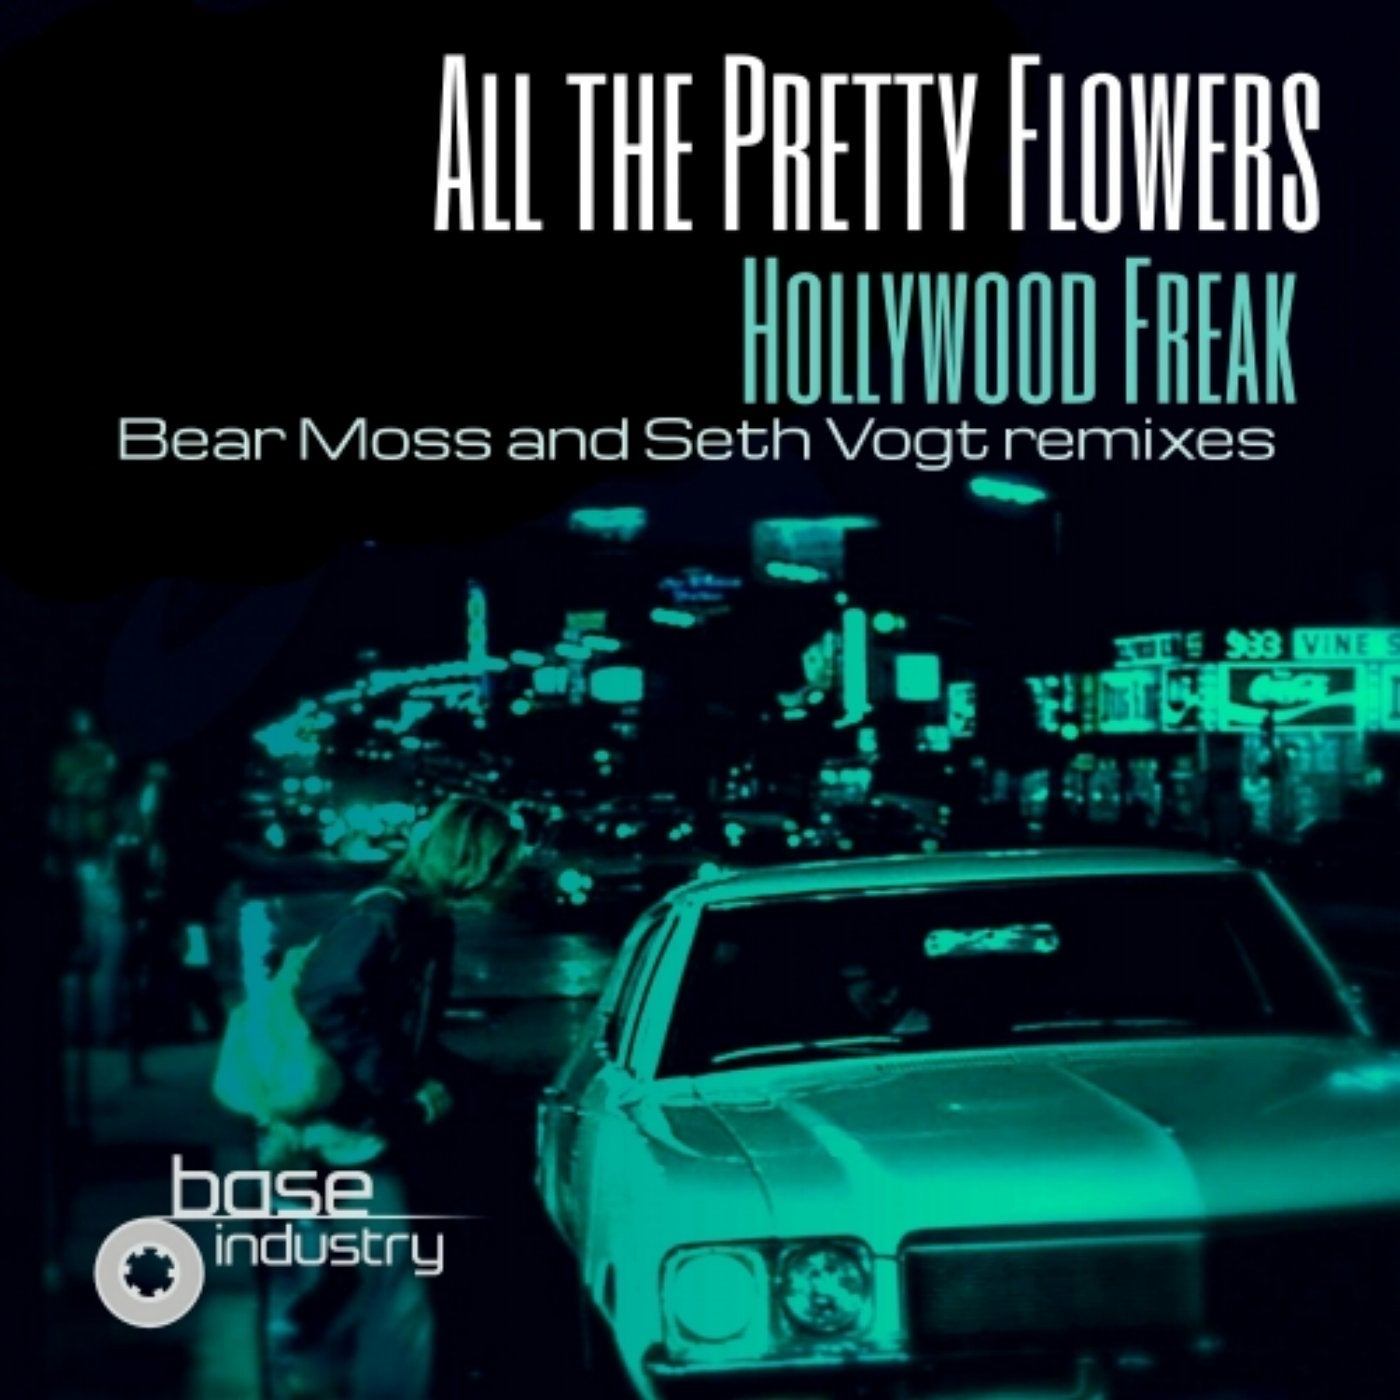 Hollywood Freak (Remixes)